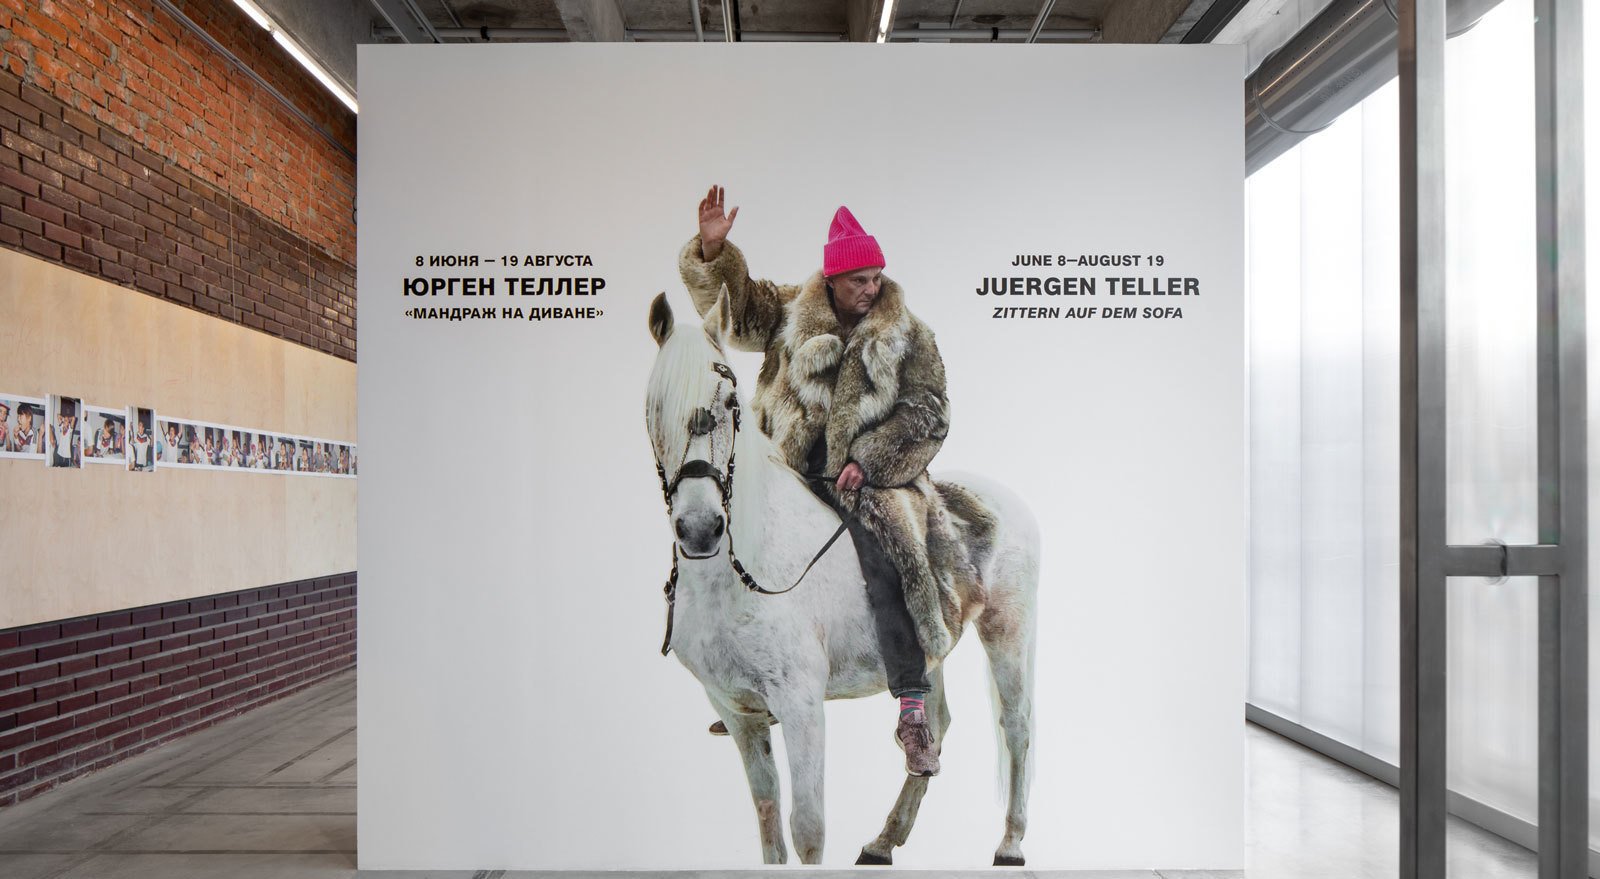 Public program for Juergen Teller’s exhibition Zittern auf dem Sofa